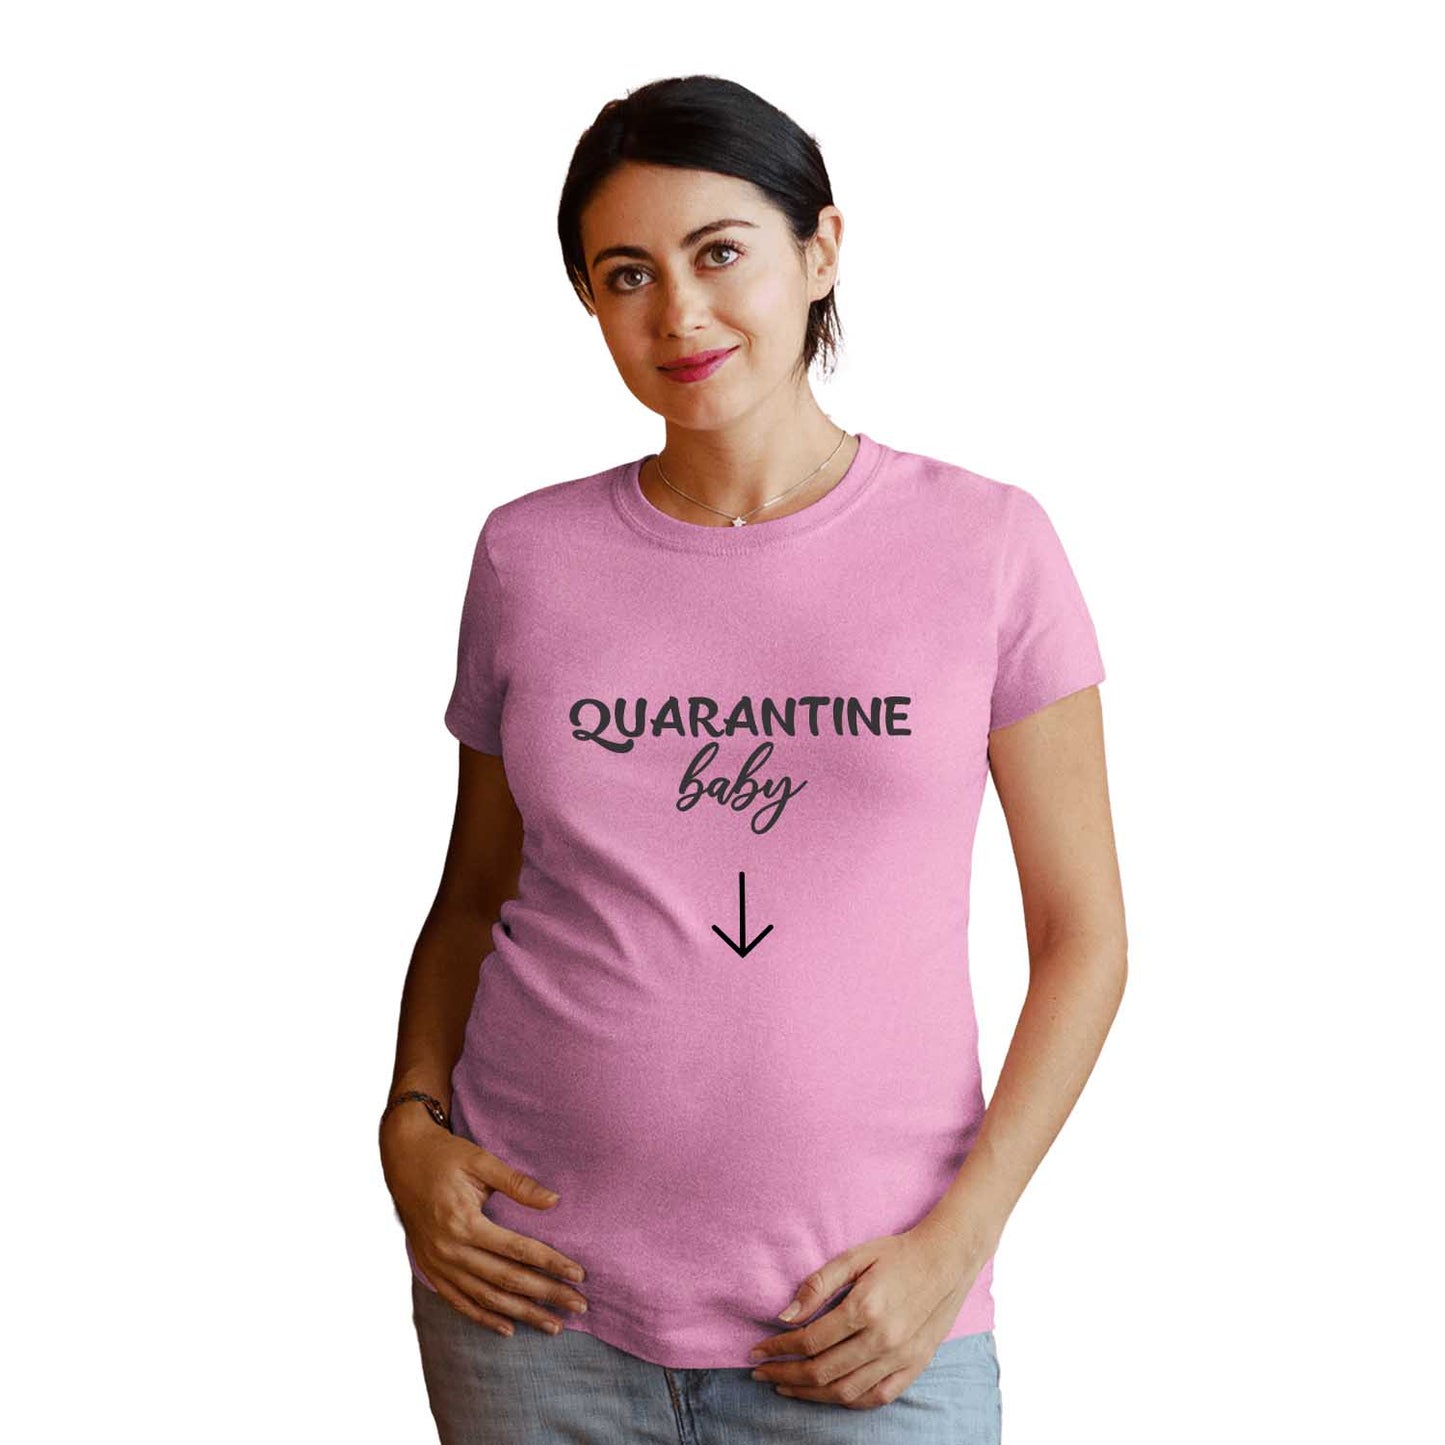 Quarantine Baby Maternity Tshirt